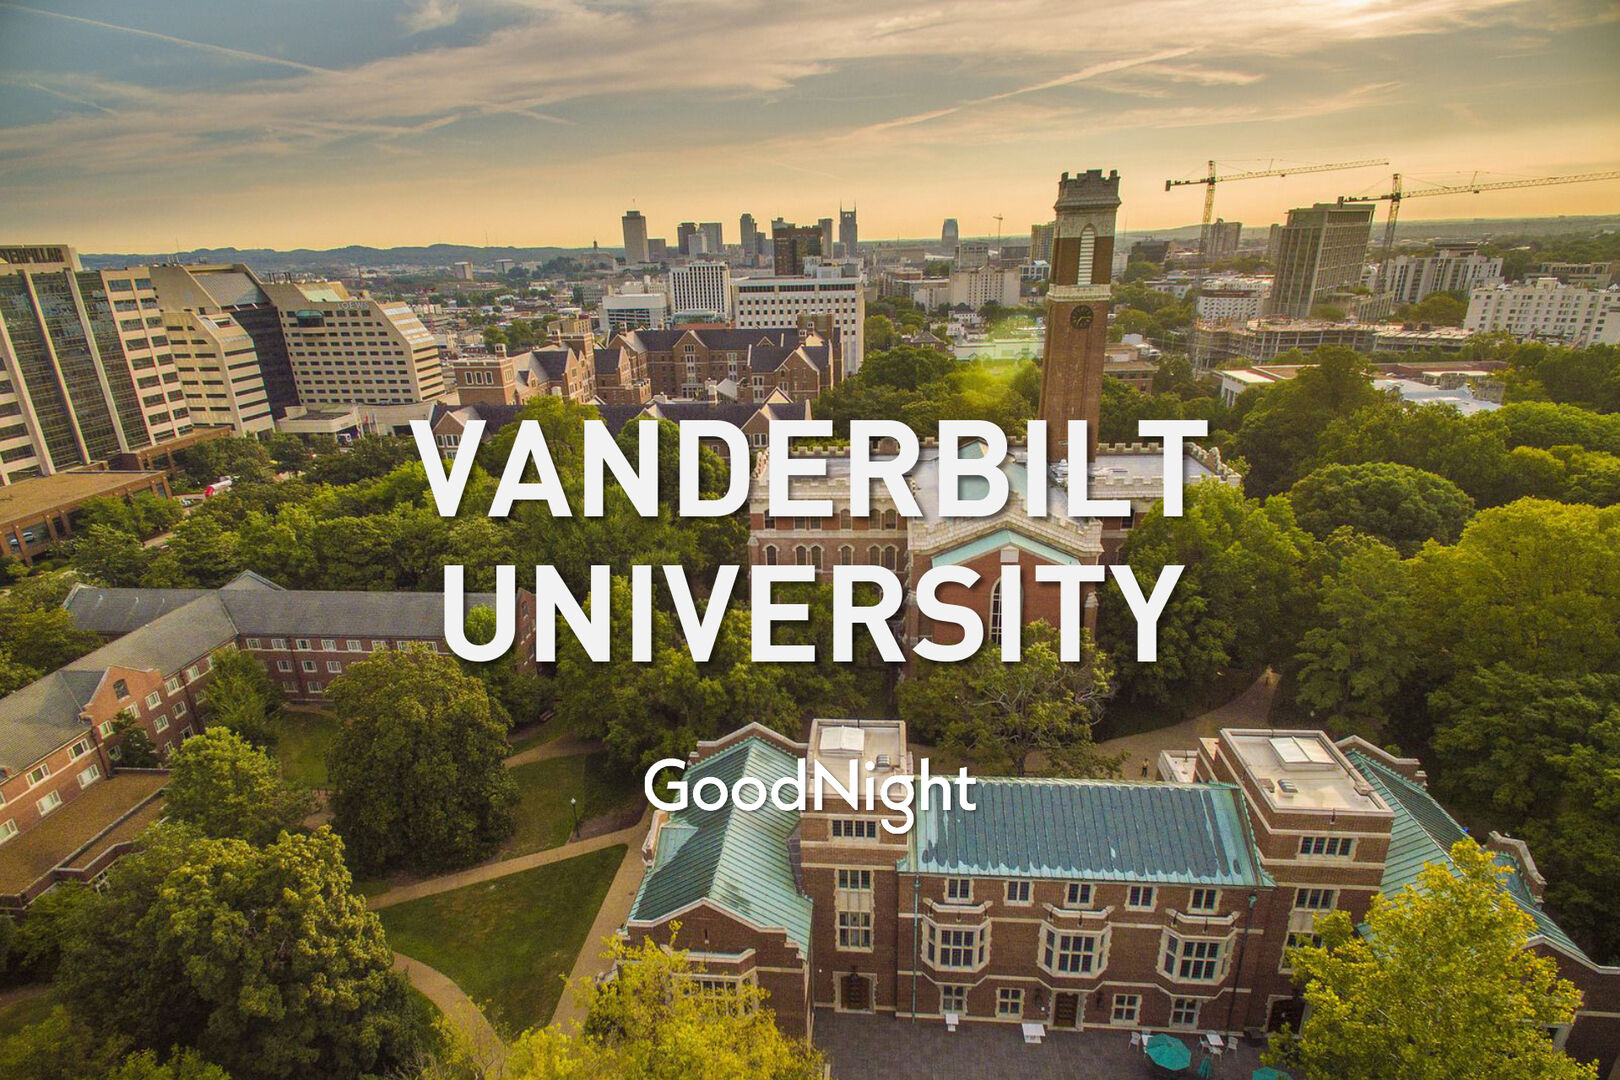 5 mins: Vanderbilt University